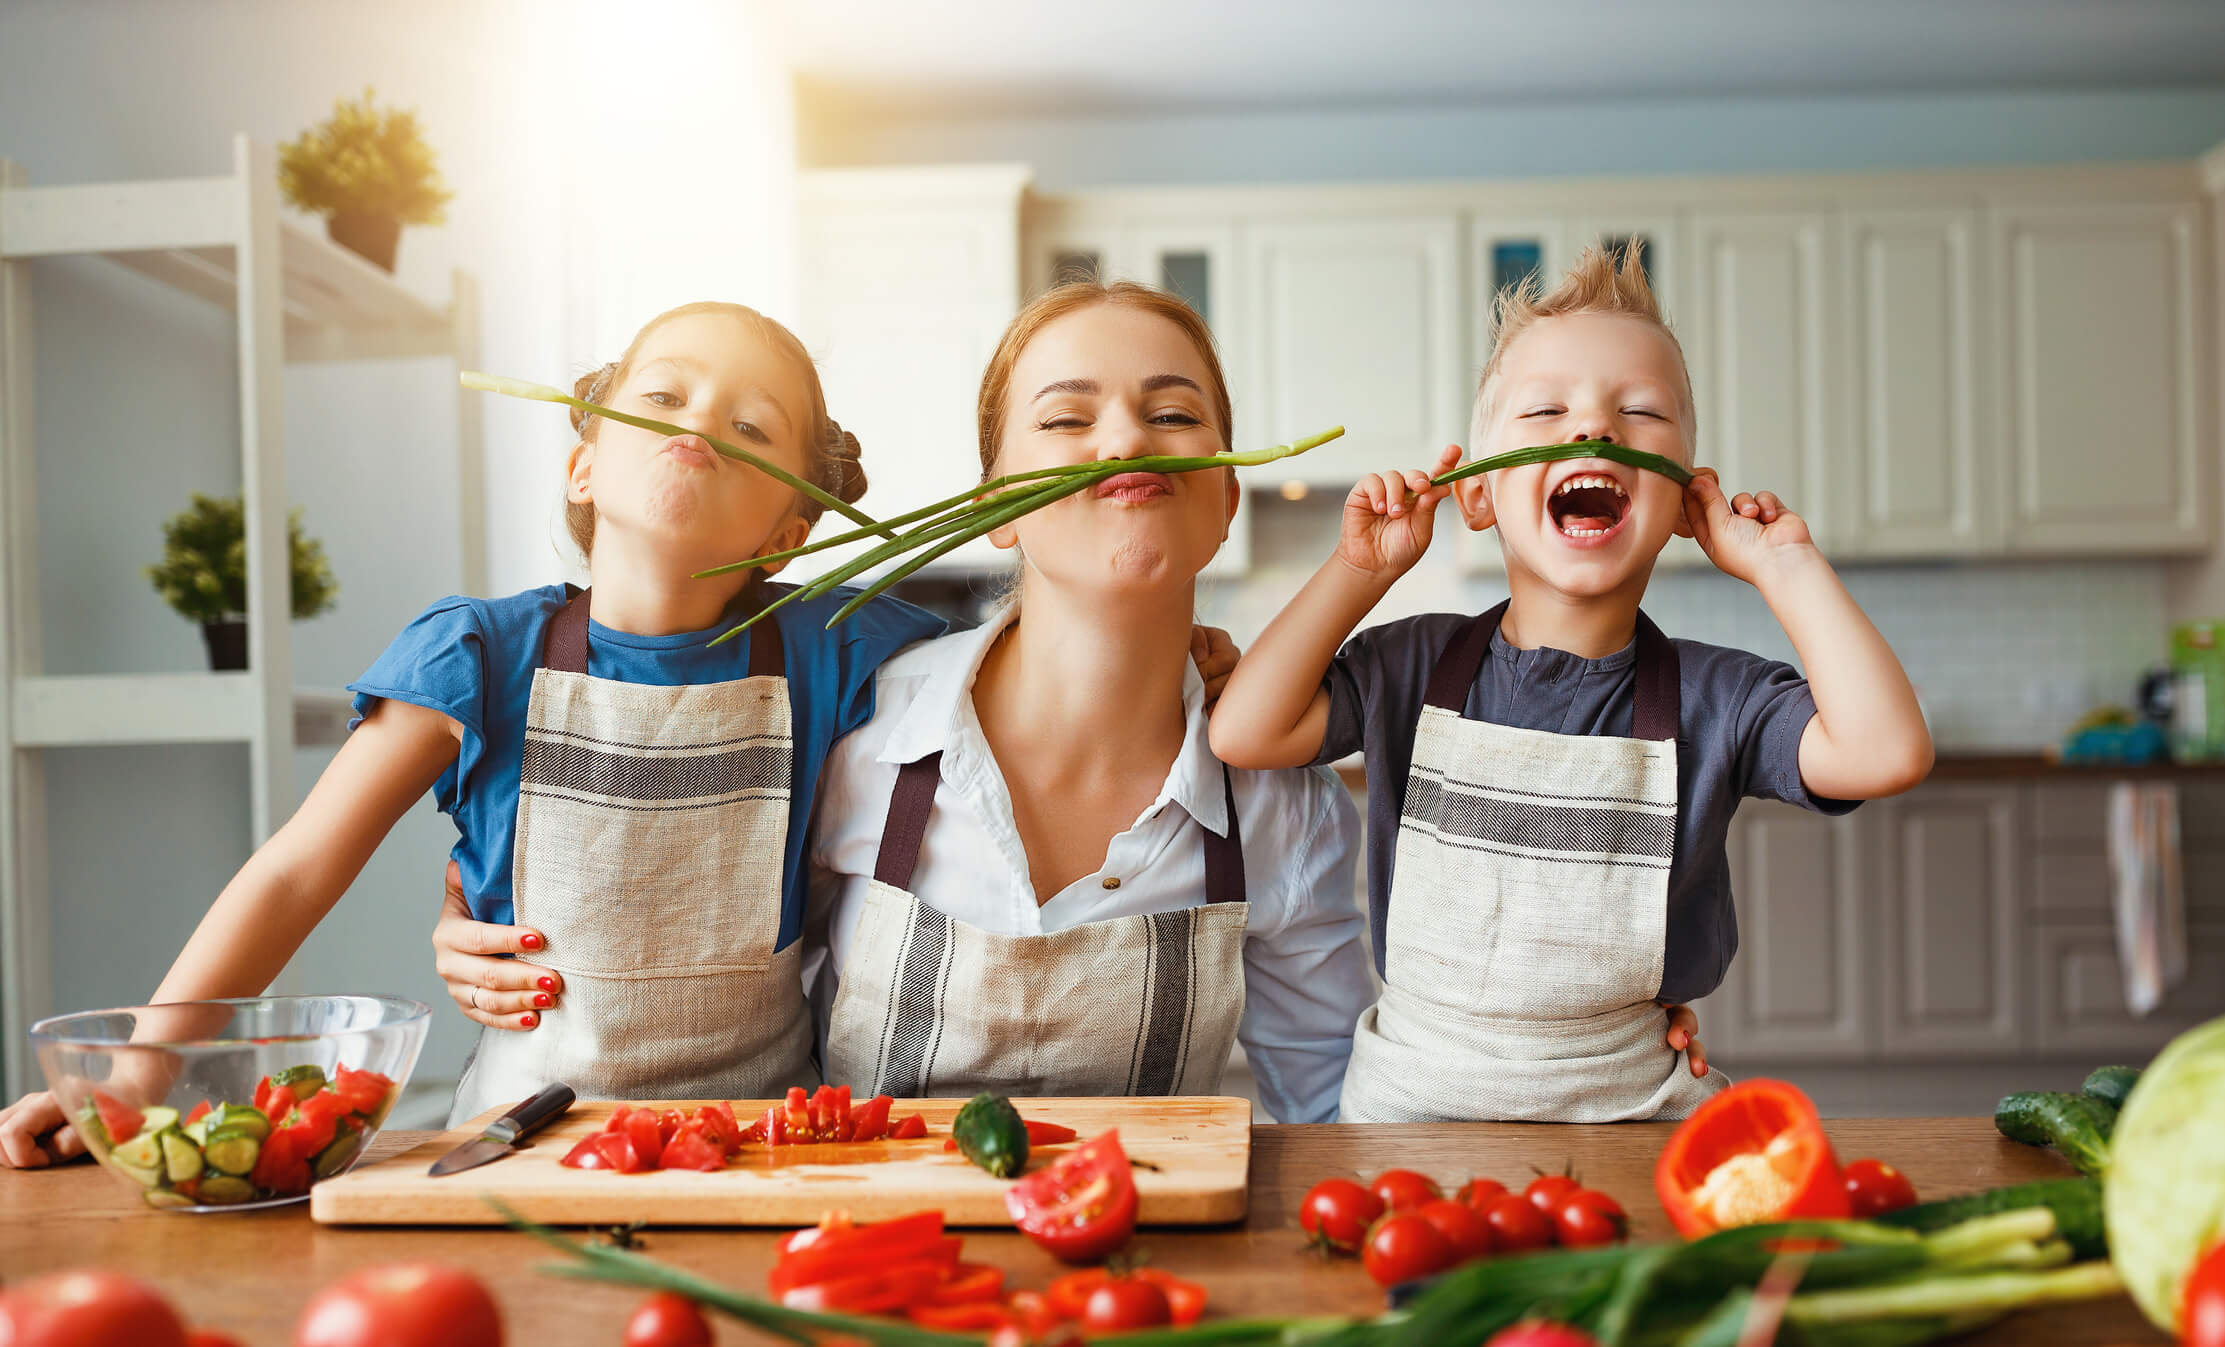 meilleure nourriture saine légumes tomate verte oignon légumes cuisine mère sein enfant fille enfants bébés enfants heureux